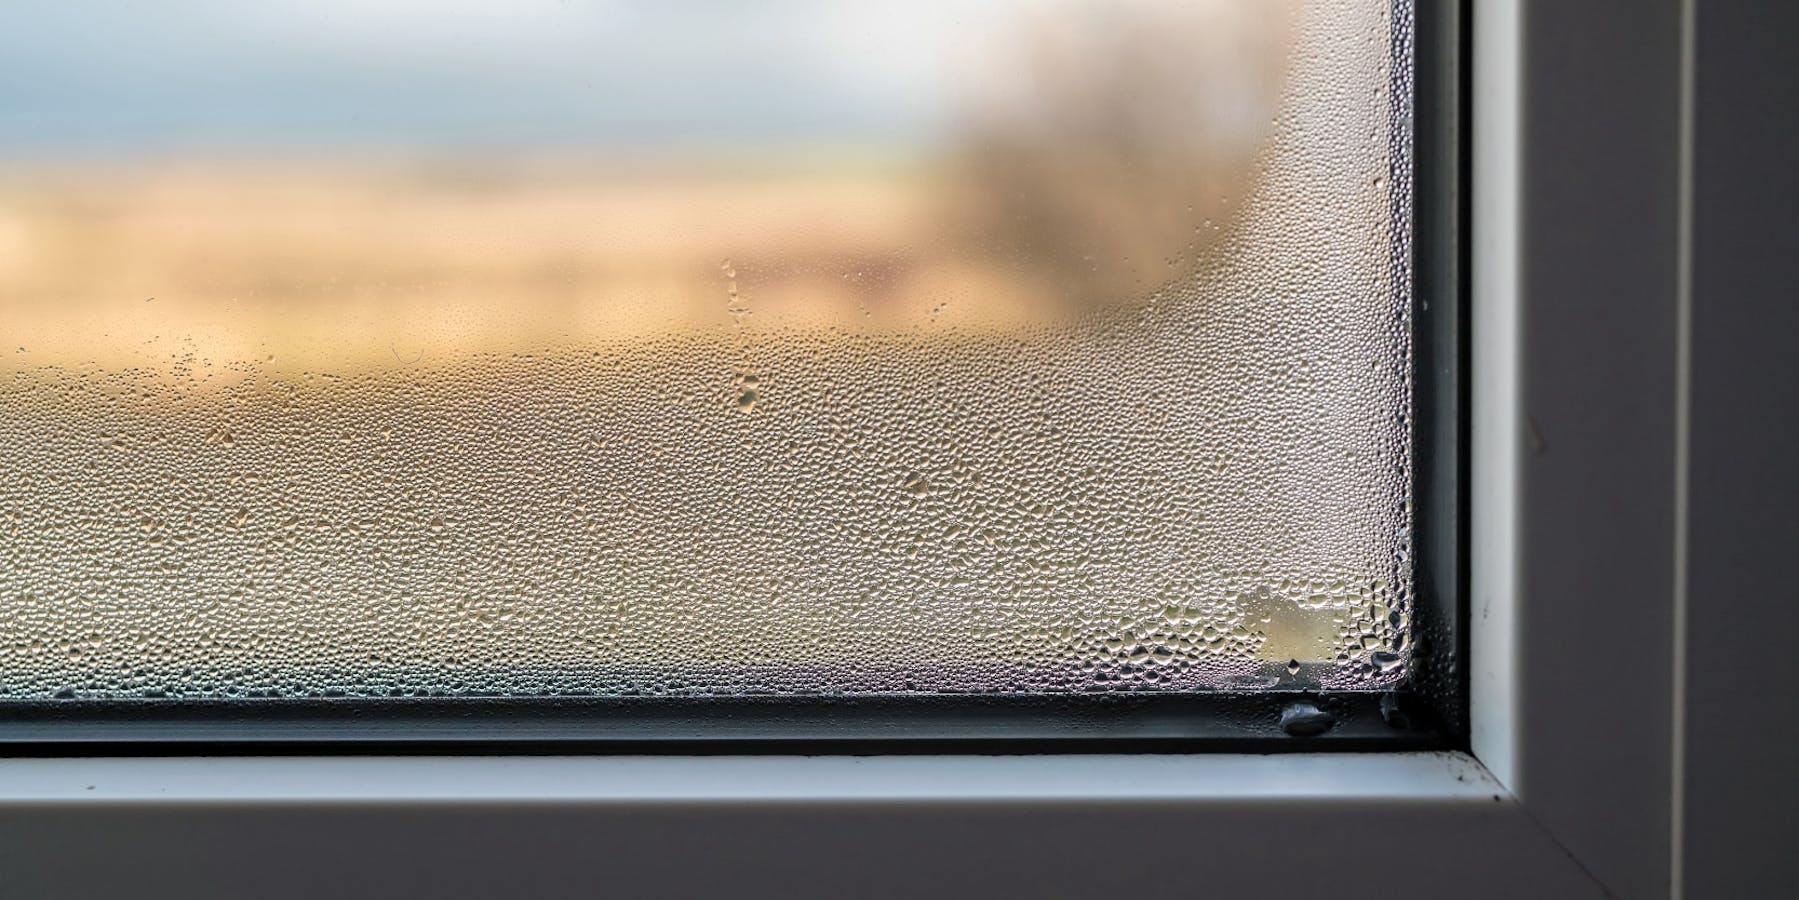 Kondensat am Fenster – Was können Sie tun?